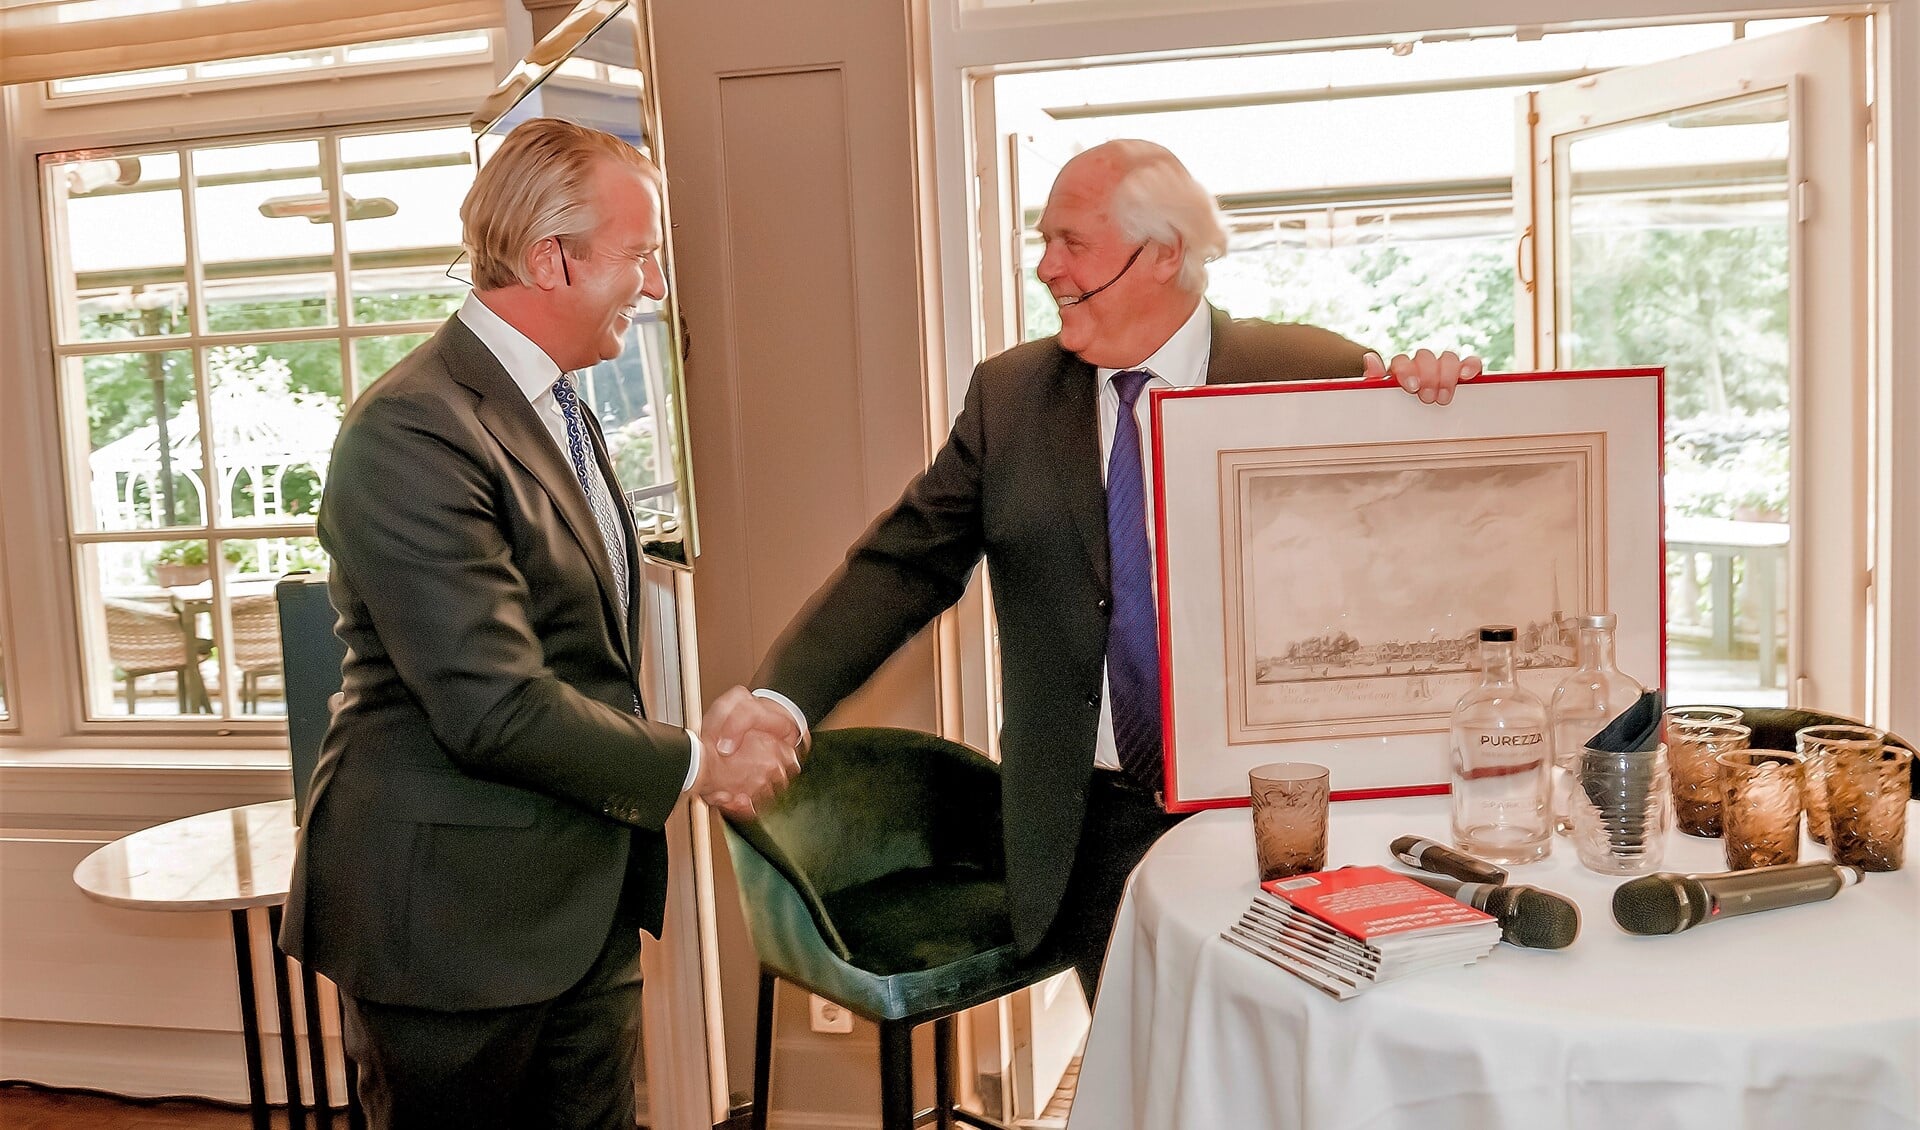 Oprichter Wim van Kampen overhandigt aan zijn opvolger Wim Nieuwenburg de ets die Van Kampen zelf ontving toen hij zo'n 40 jaar geleden werd beëdigd als taxateur-makelaar (foto: Fotozoom!).